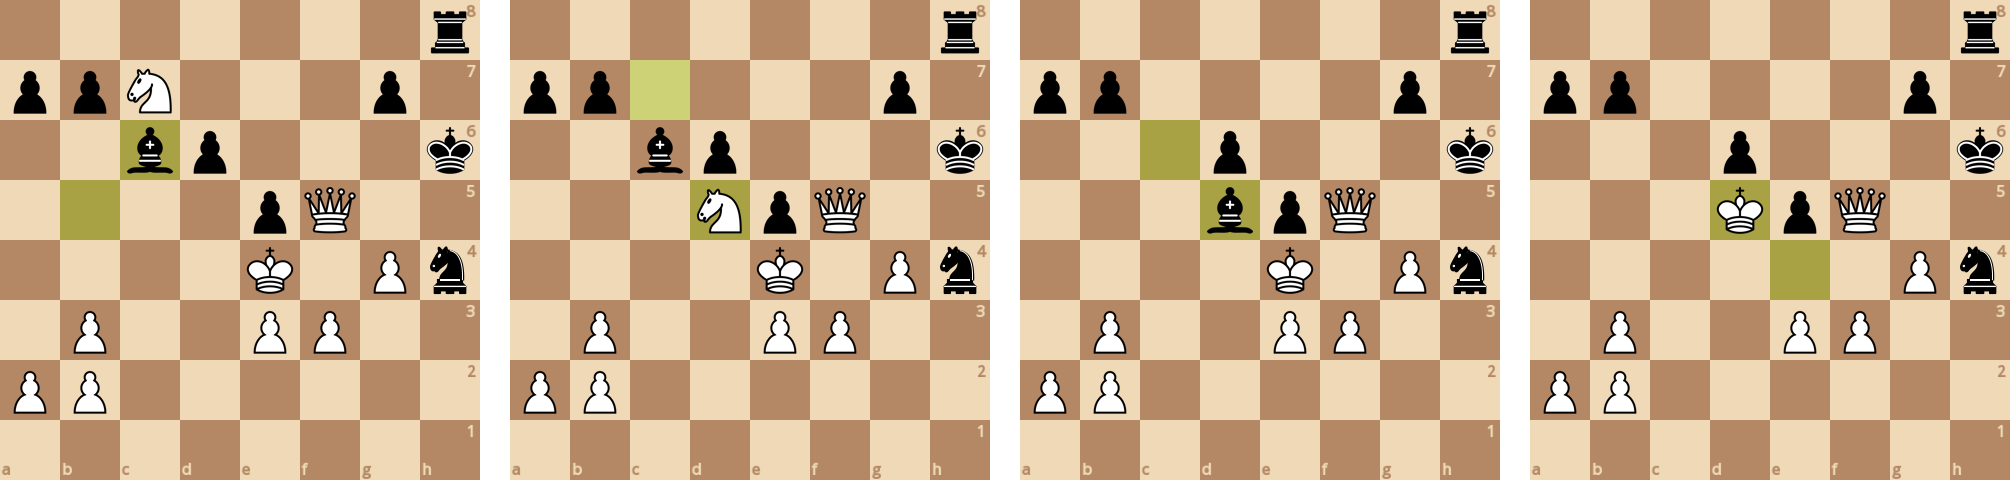 Программирование необычных шахмат - 35